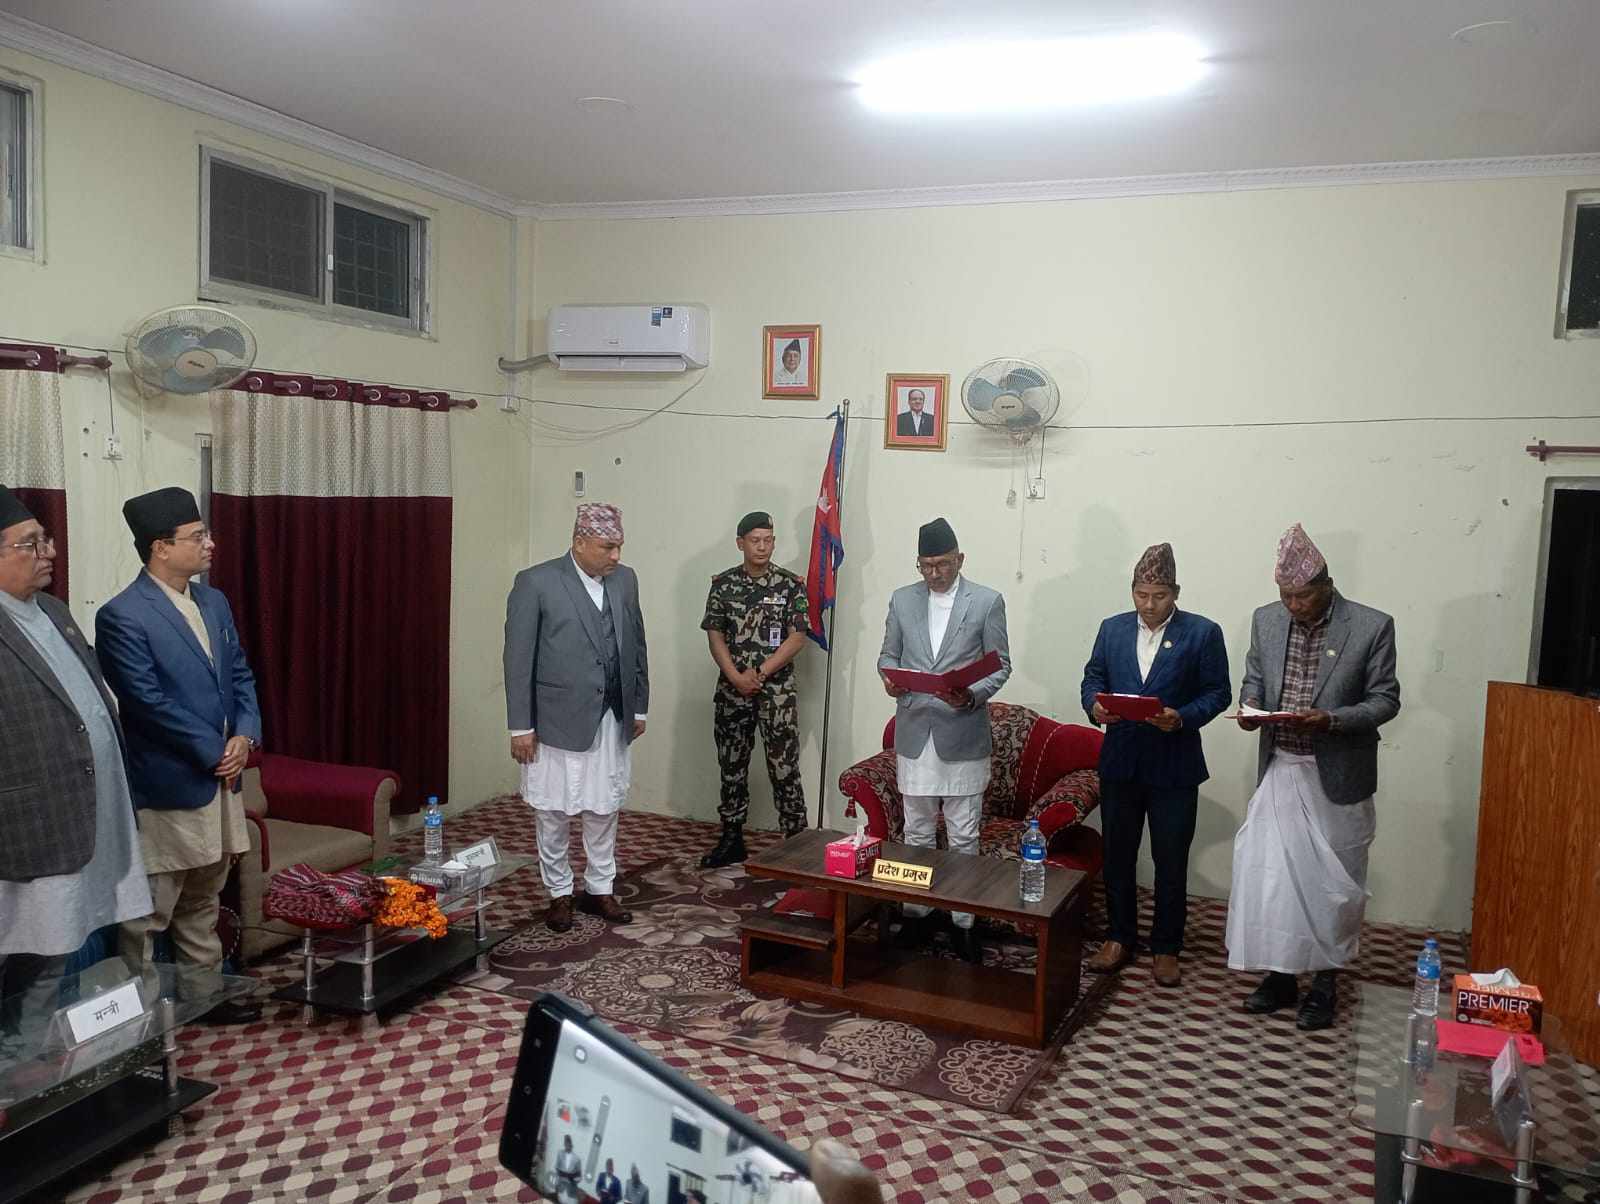 अल्पमत मा रहेको सुदुरपश्चिम प्रदेश सरकार बिस्तार, उन्मुक्ति पार्टी भित्र विवाद चर्कियो